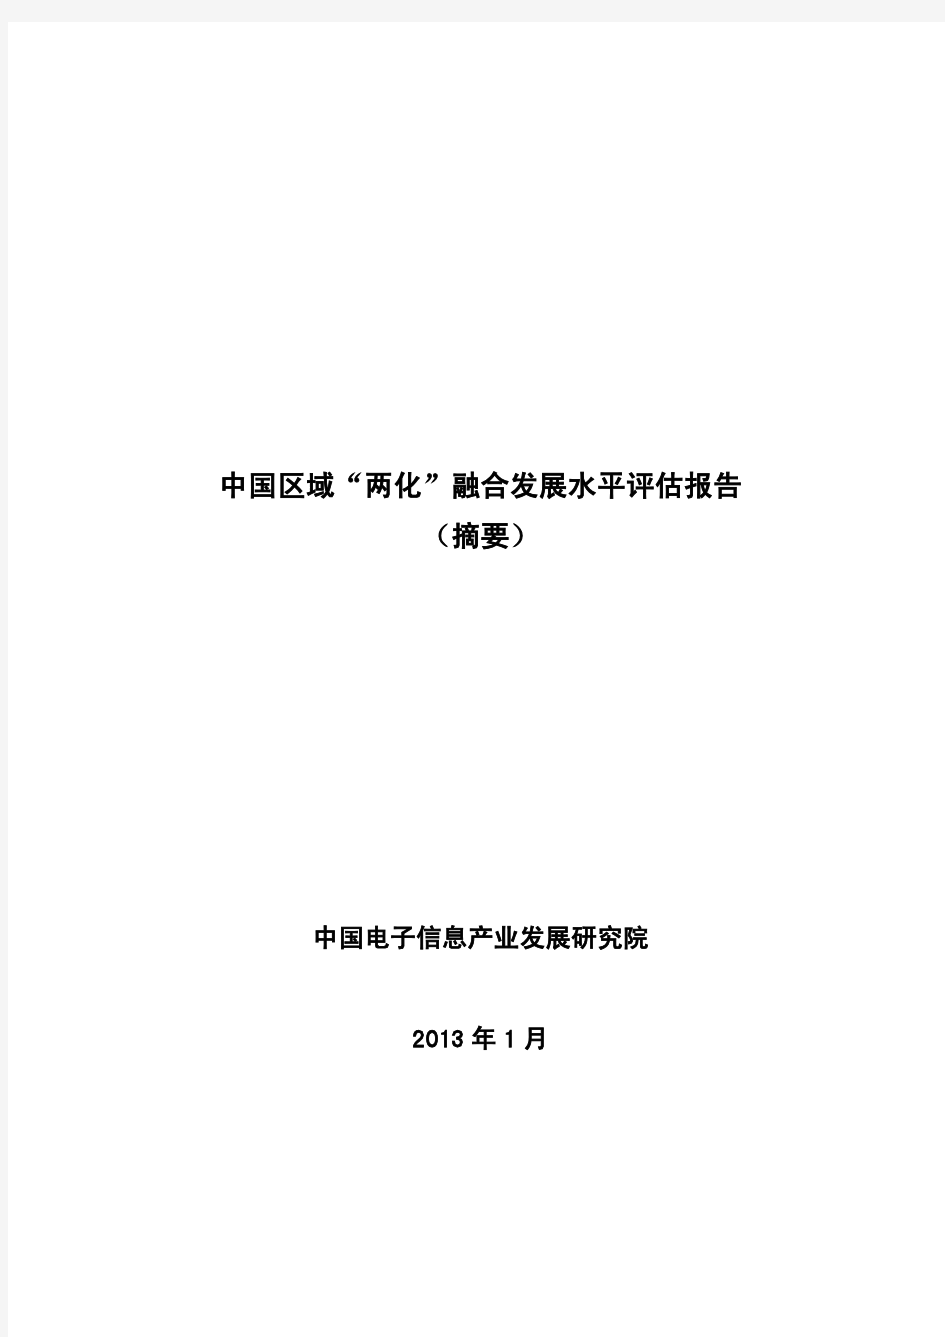 2012年中国信息化与工业化融合发展水平评估报告